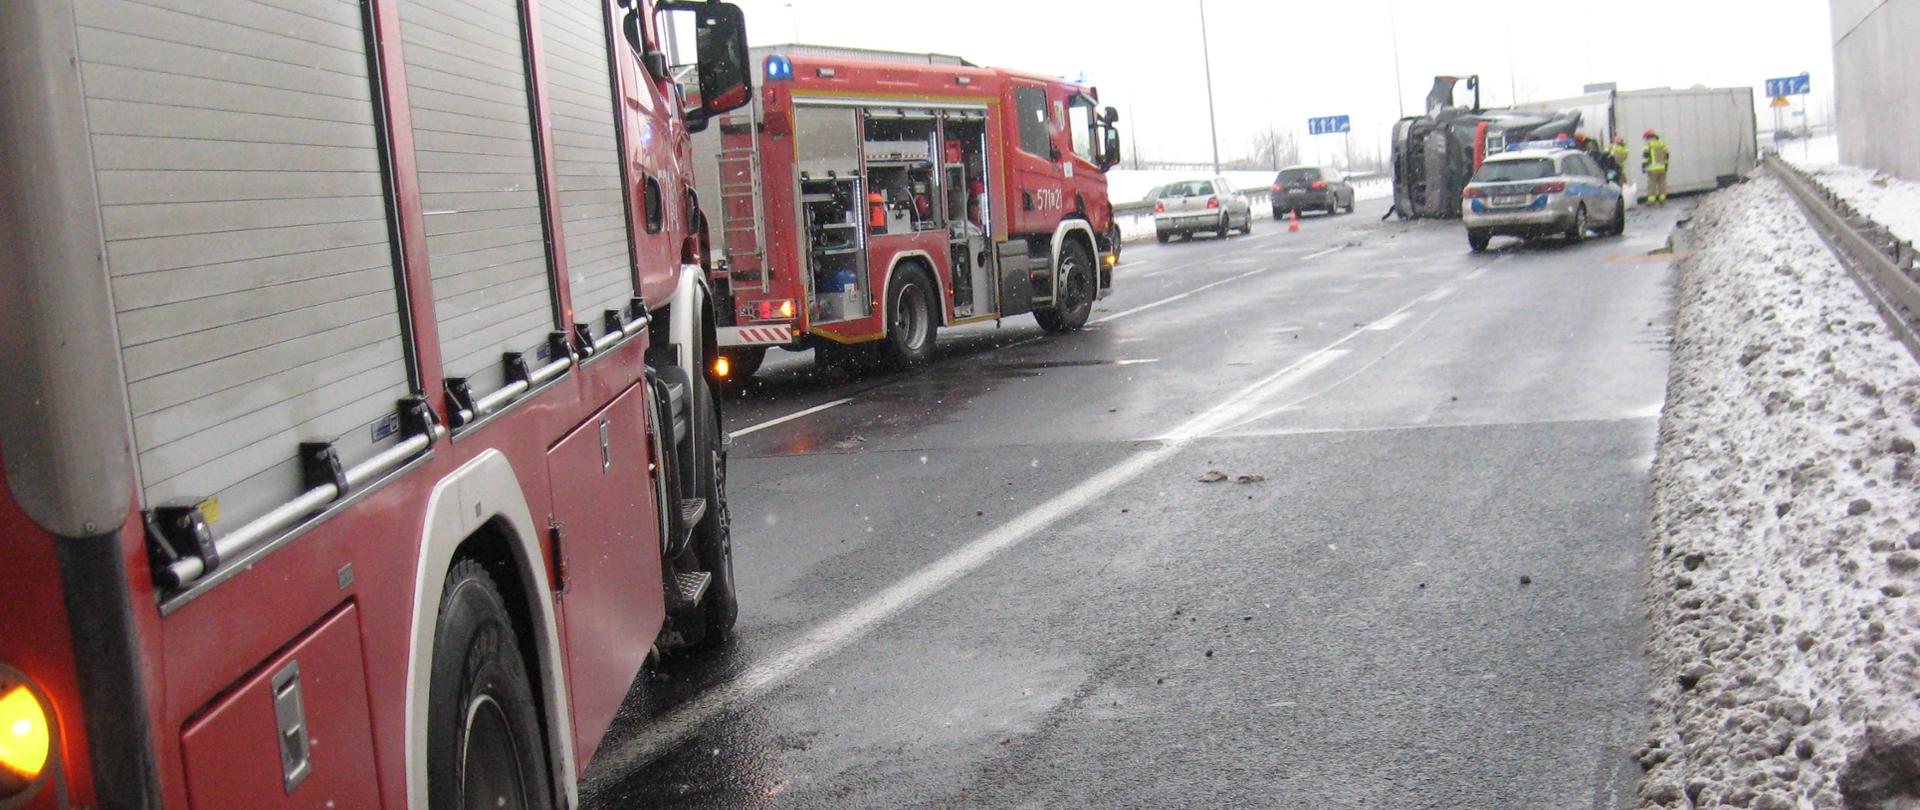 Na zdjęciu znajdują dwa samochody Państwowej Straży Pożarnej, na dalszym planie Policja za nią przewrócona ciężarówka, również na zdjęciu znajdują się dwa samochody osobowe